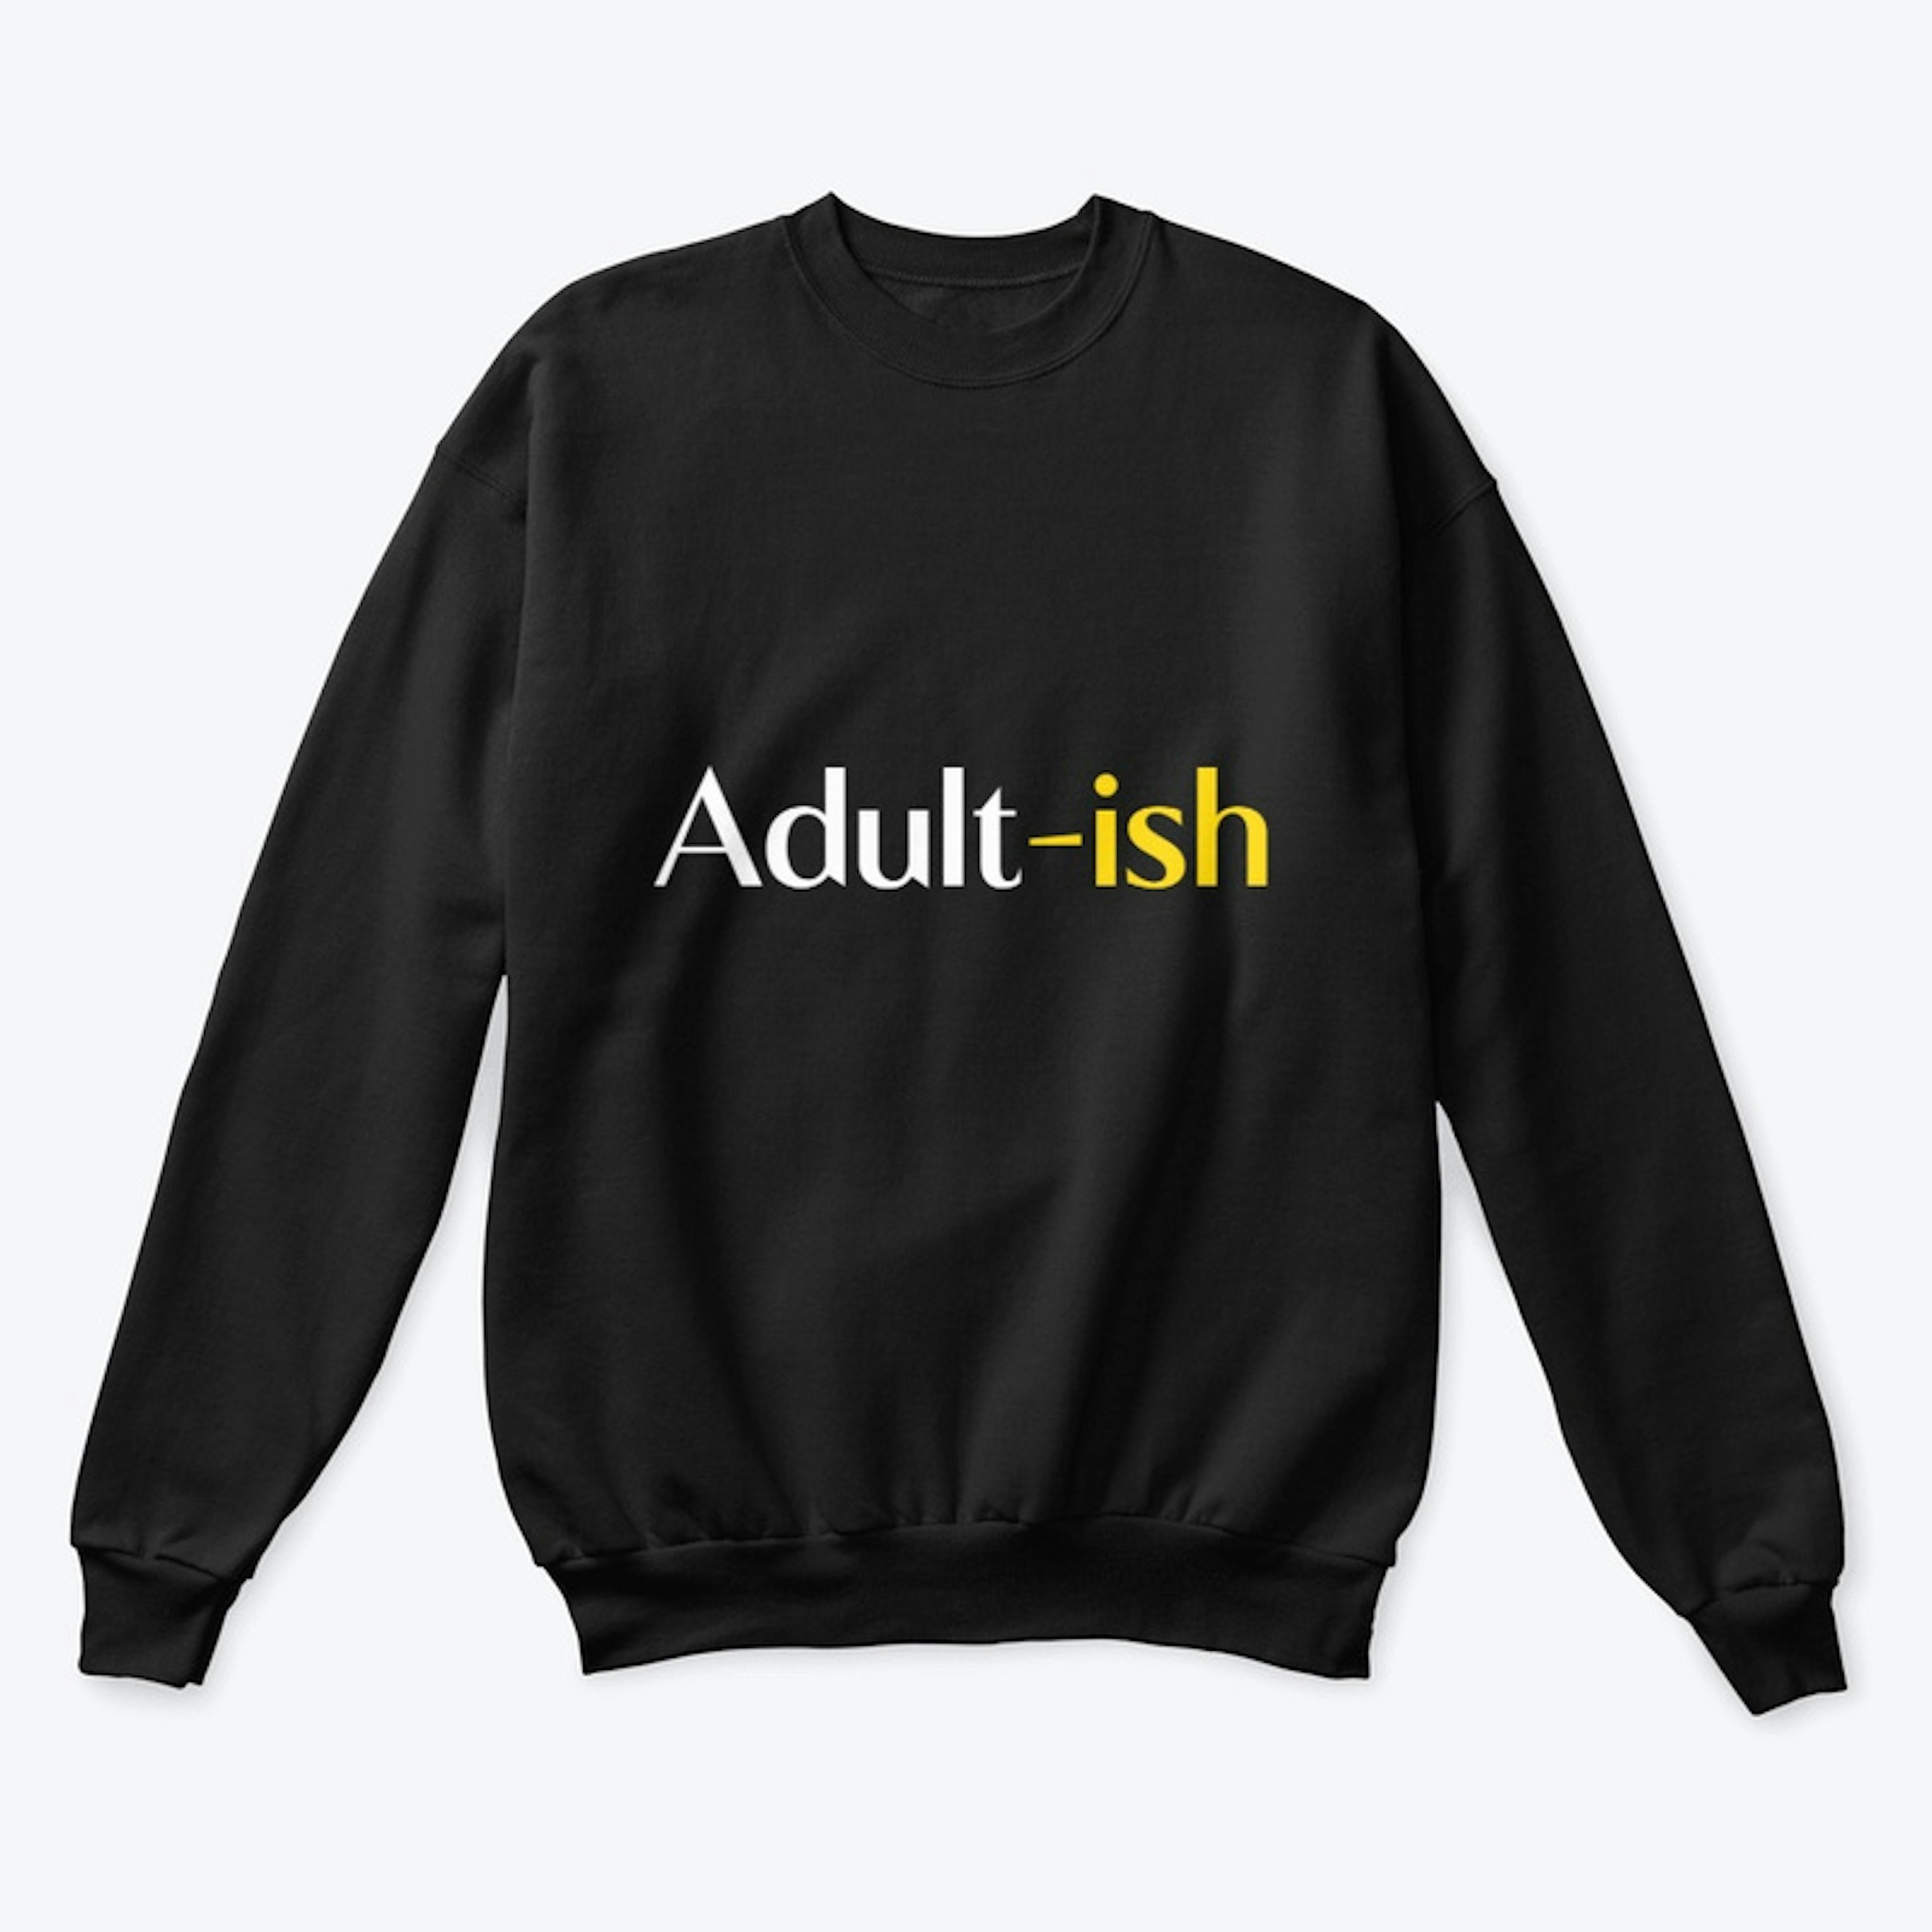 Adult - Ish